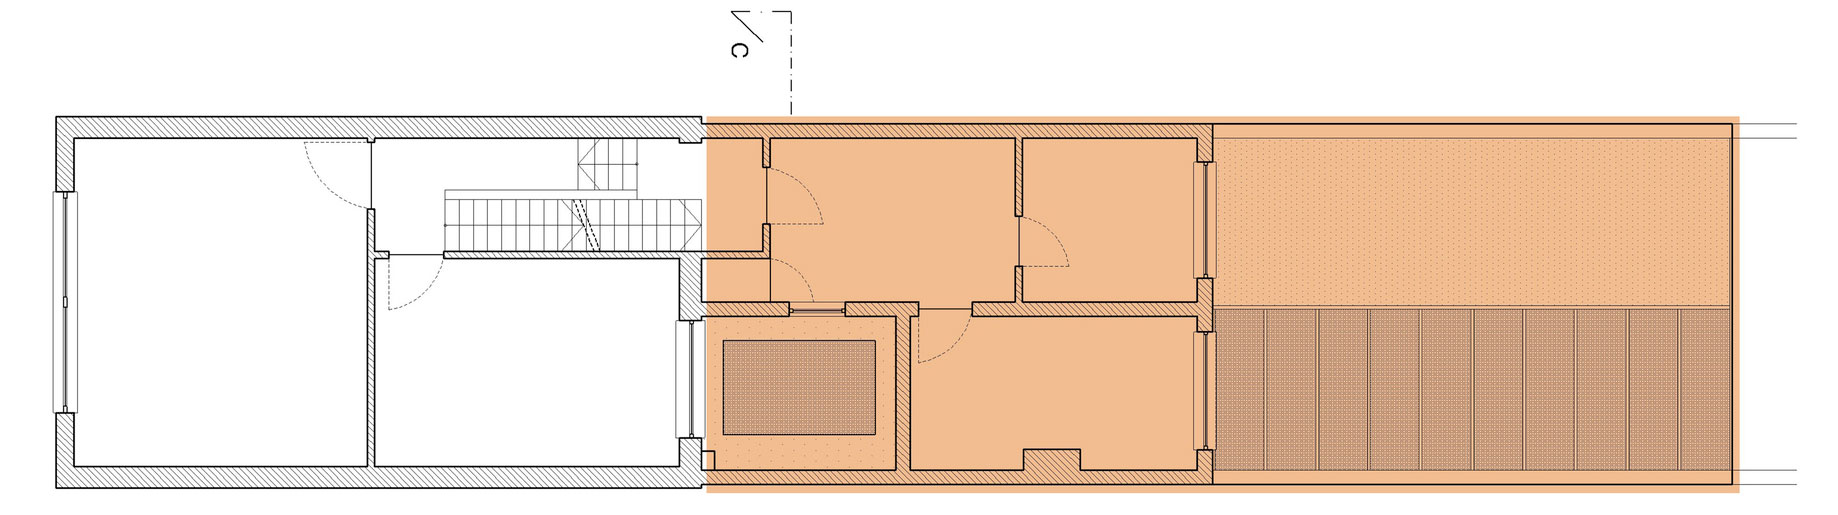 План схема особняка Folding Box в Антверпене